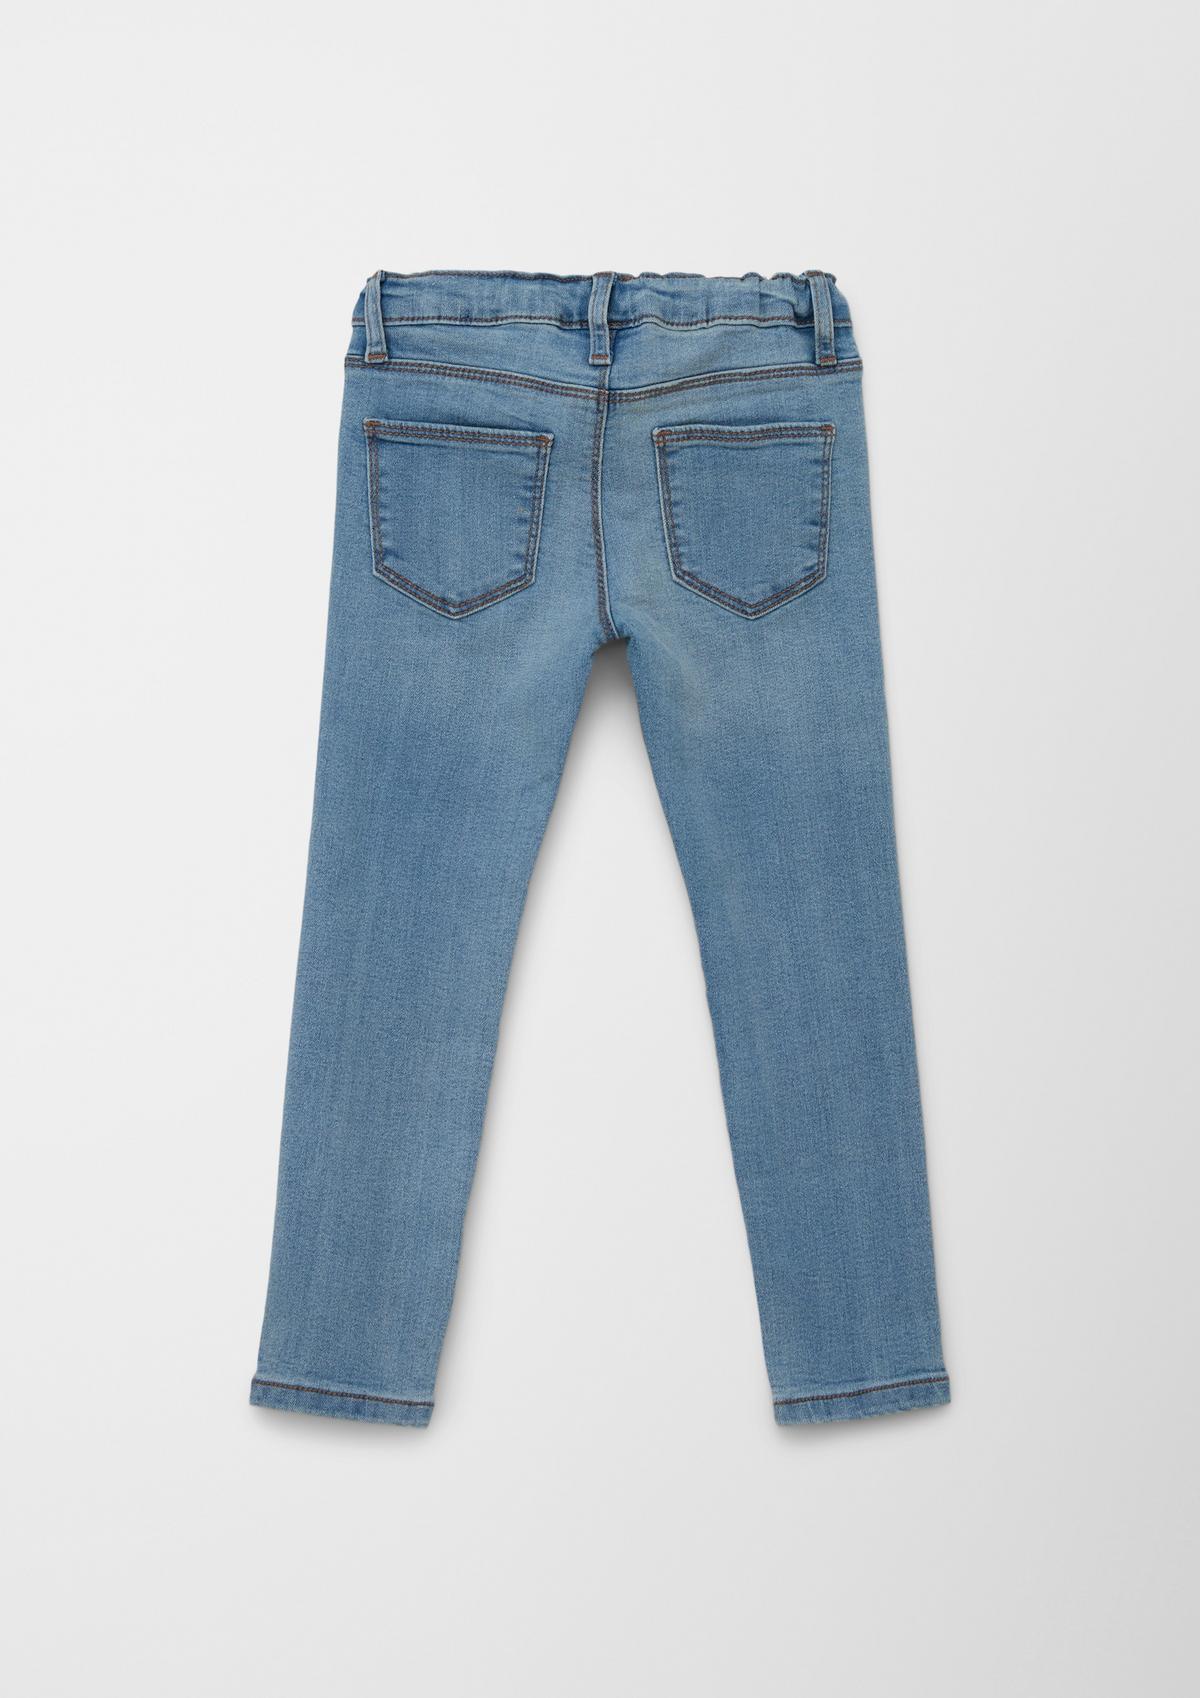 s.Oliver Jeans hlače hlačne pajkice / kroj Regular Fit/ High Rise / Tapered Leg